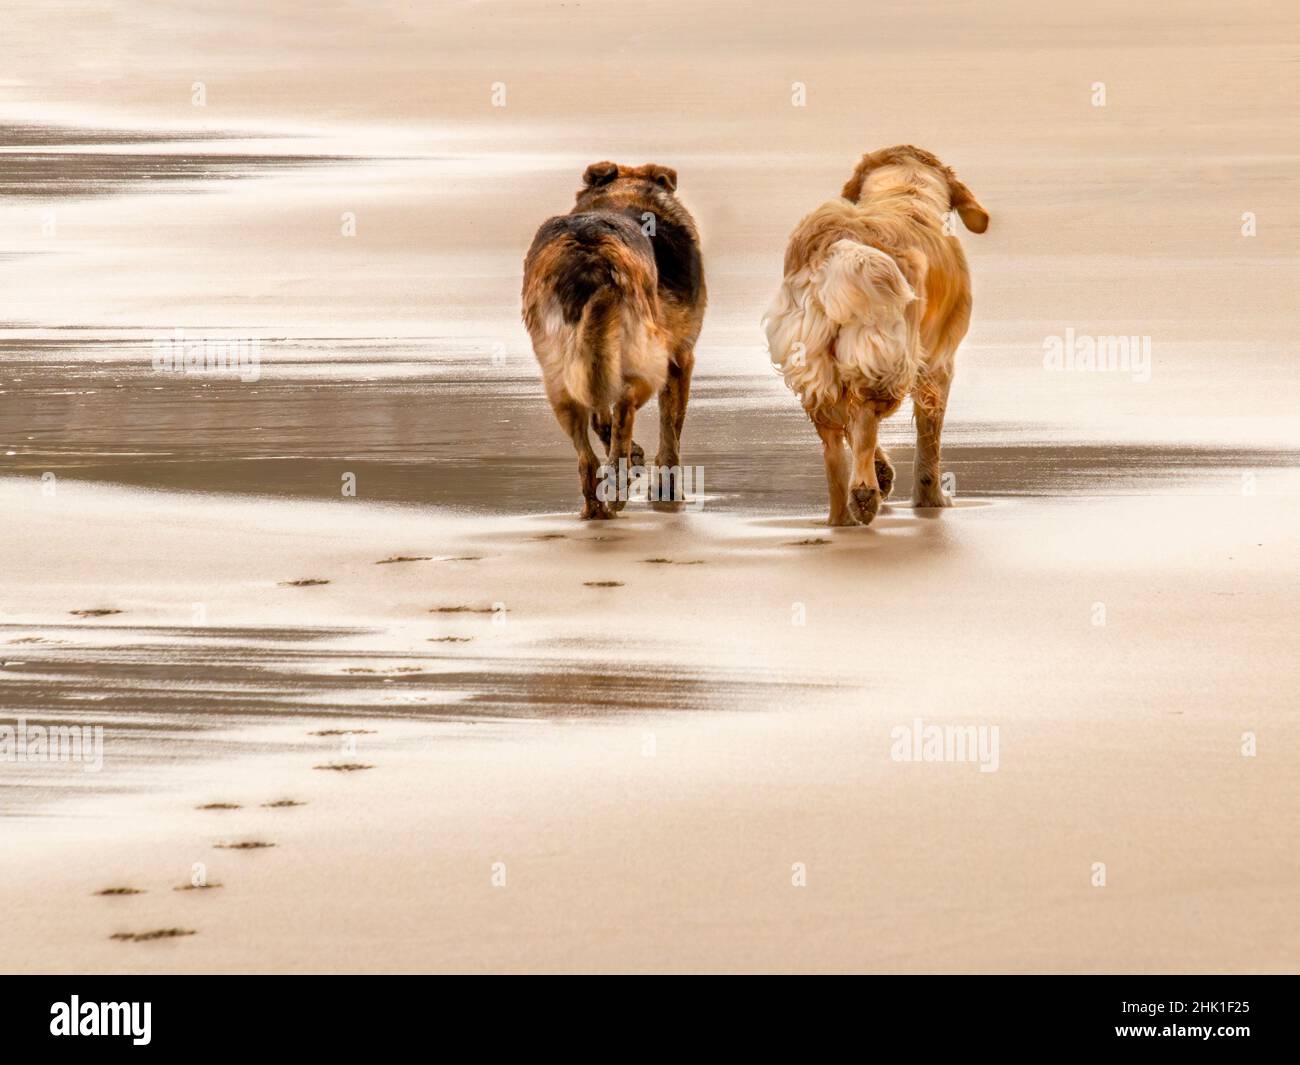 Los perros más amigos caminan juntos, uno al lado de otro, lejos de la cámara en una playa húmeda que muestra pasos y reflexiones Foto de stock